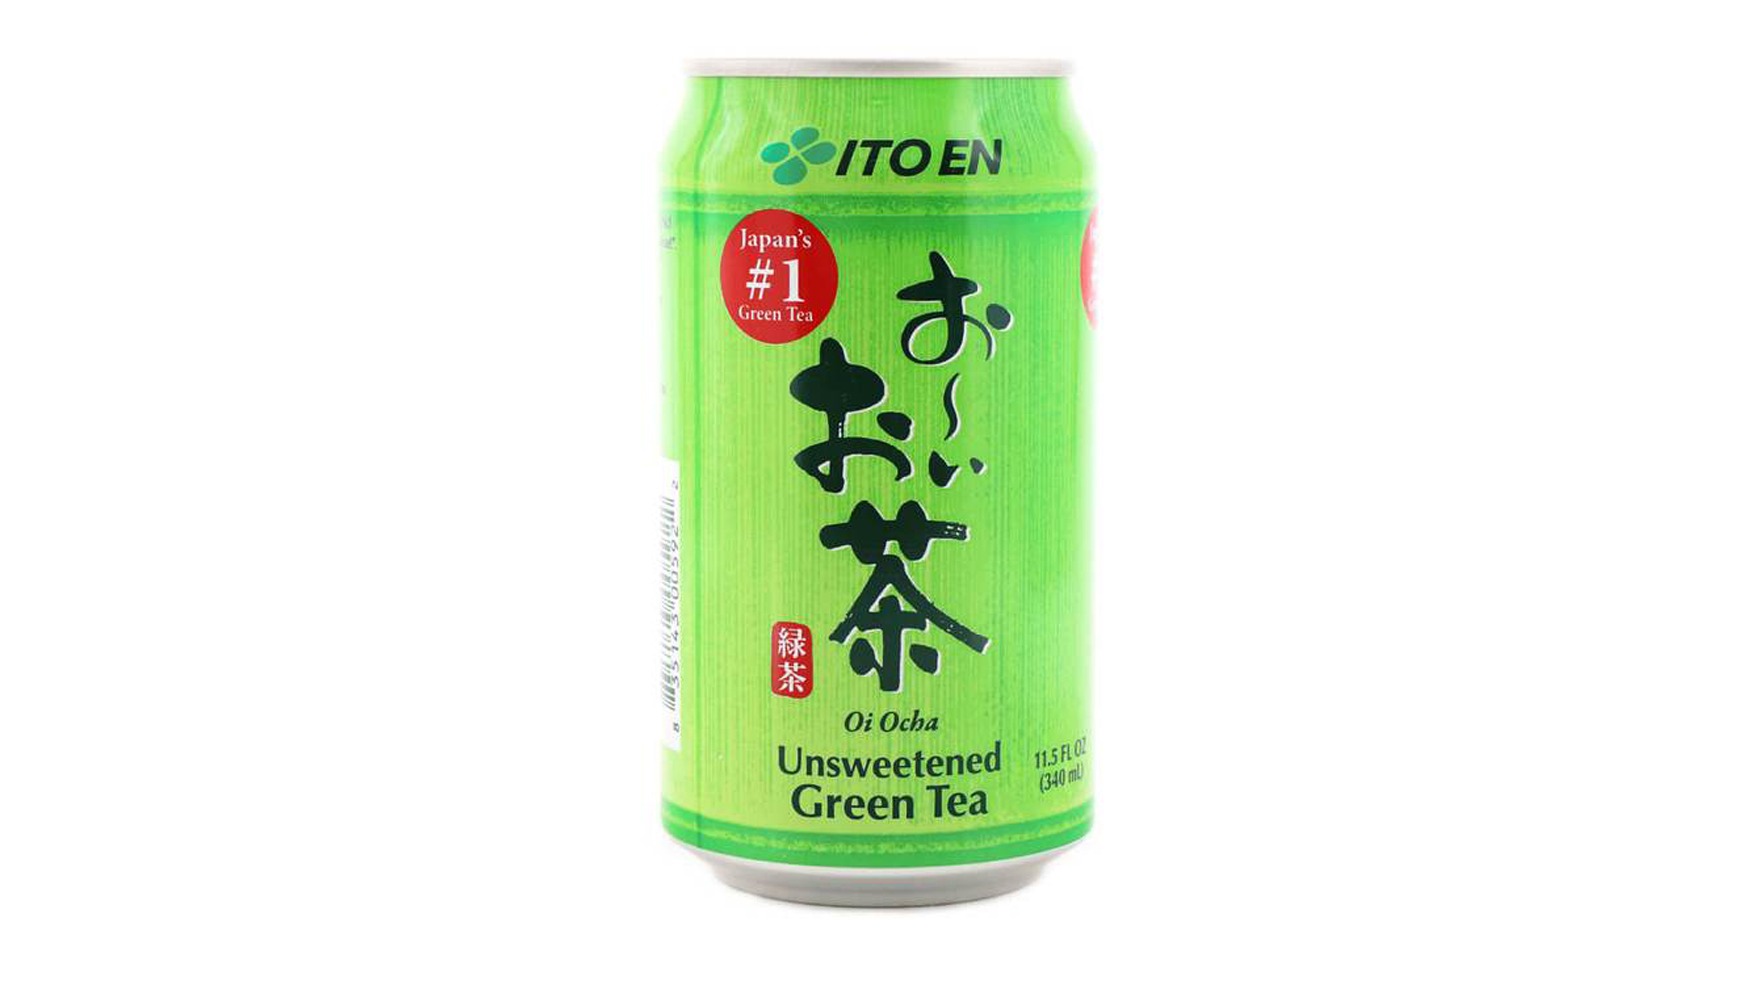 Unsweetened Green Tea